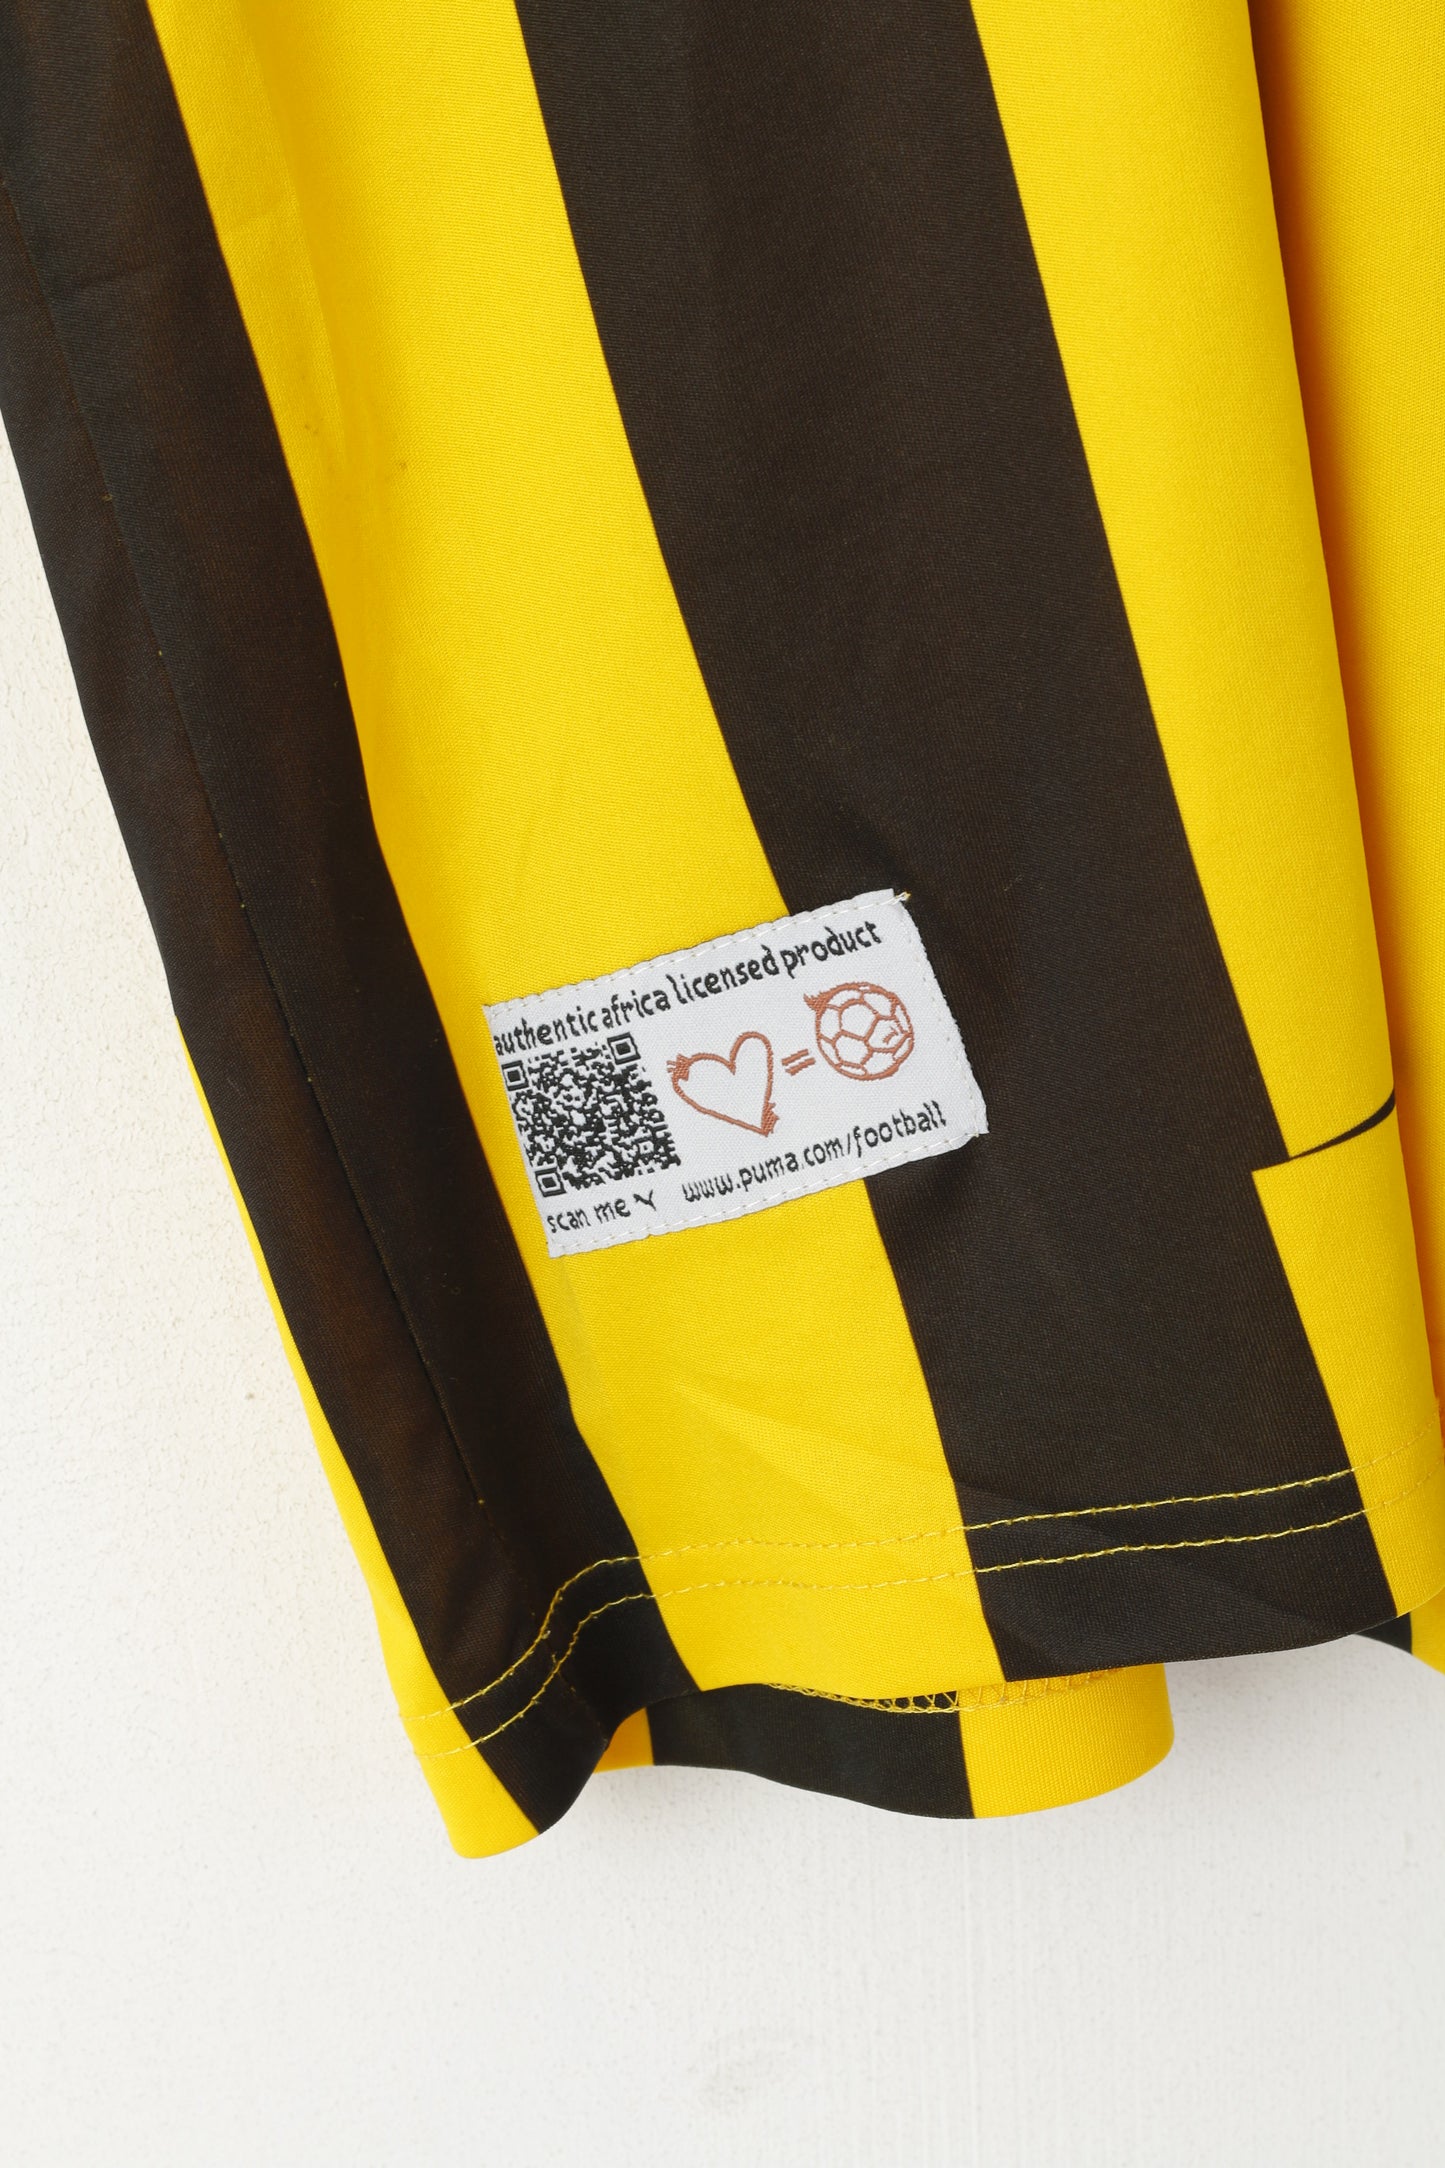 Puma Men S Shirt Yellow BVB Dortmund Borussia Football Jersey Crabman #10 Top